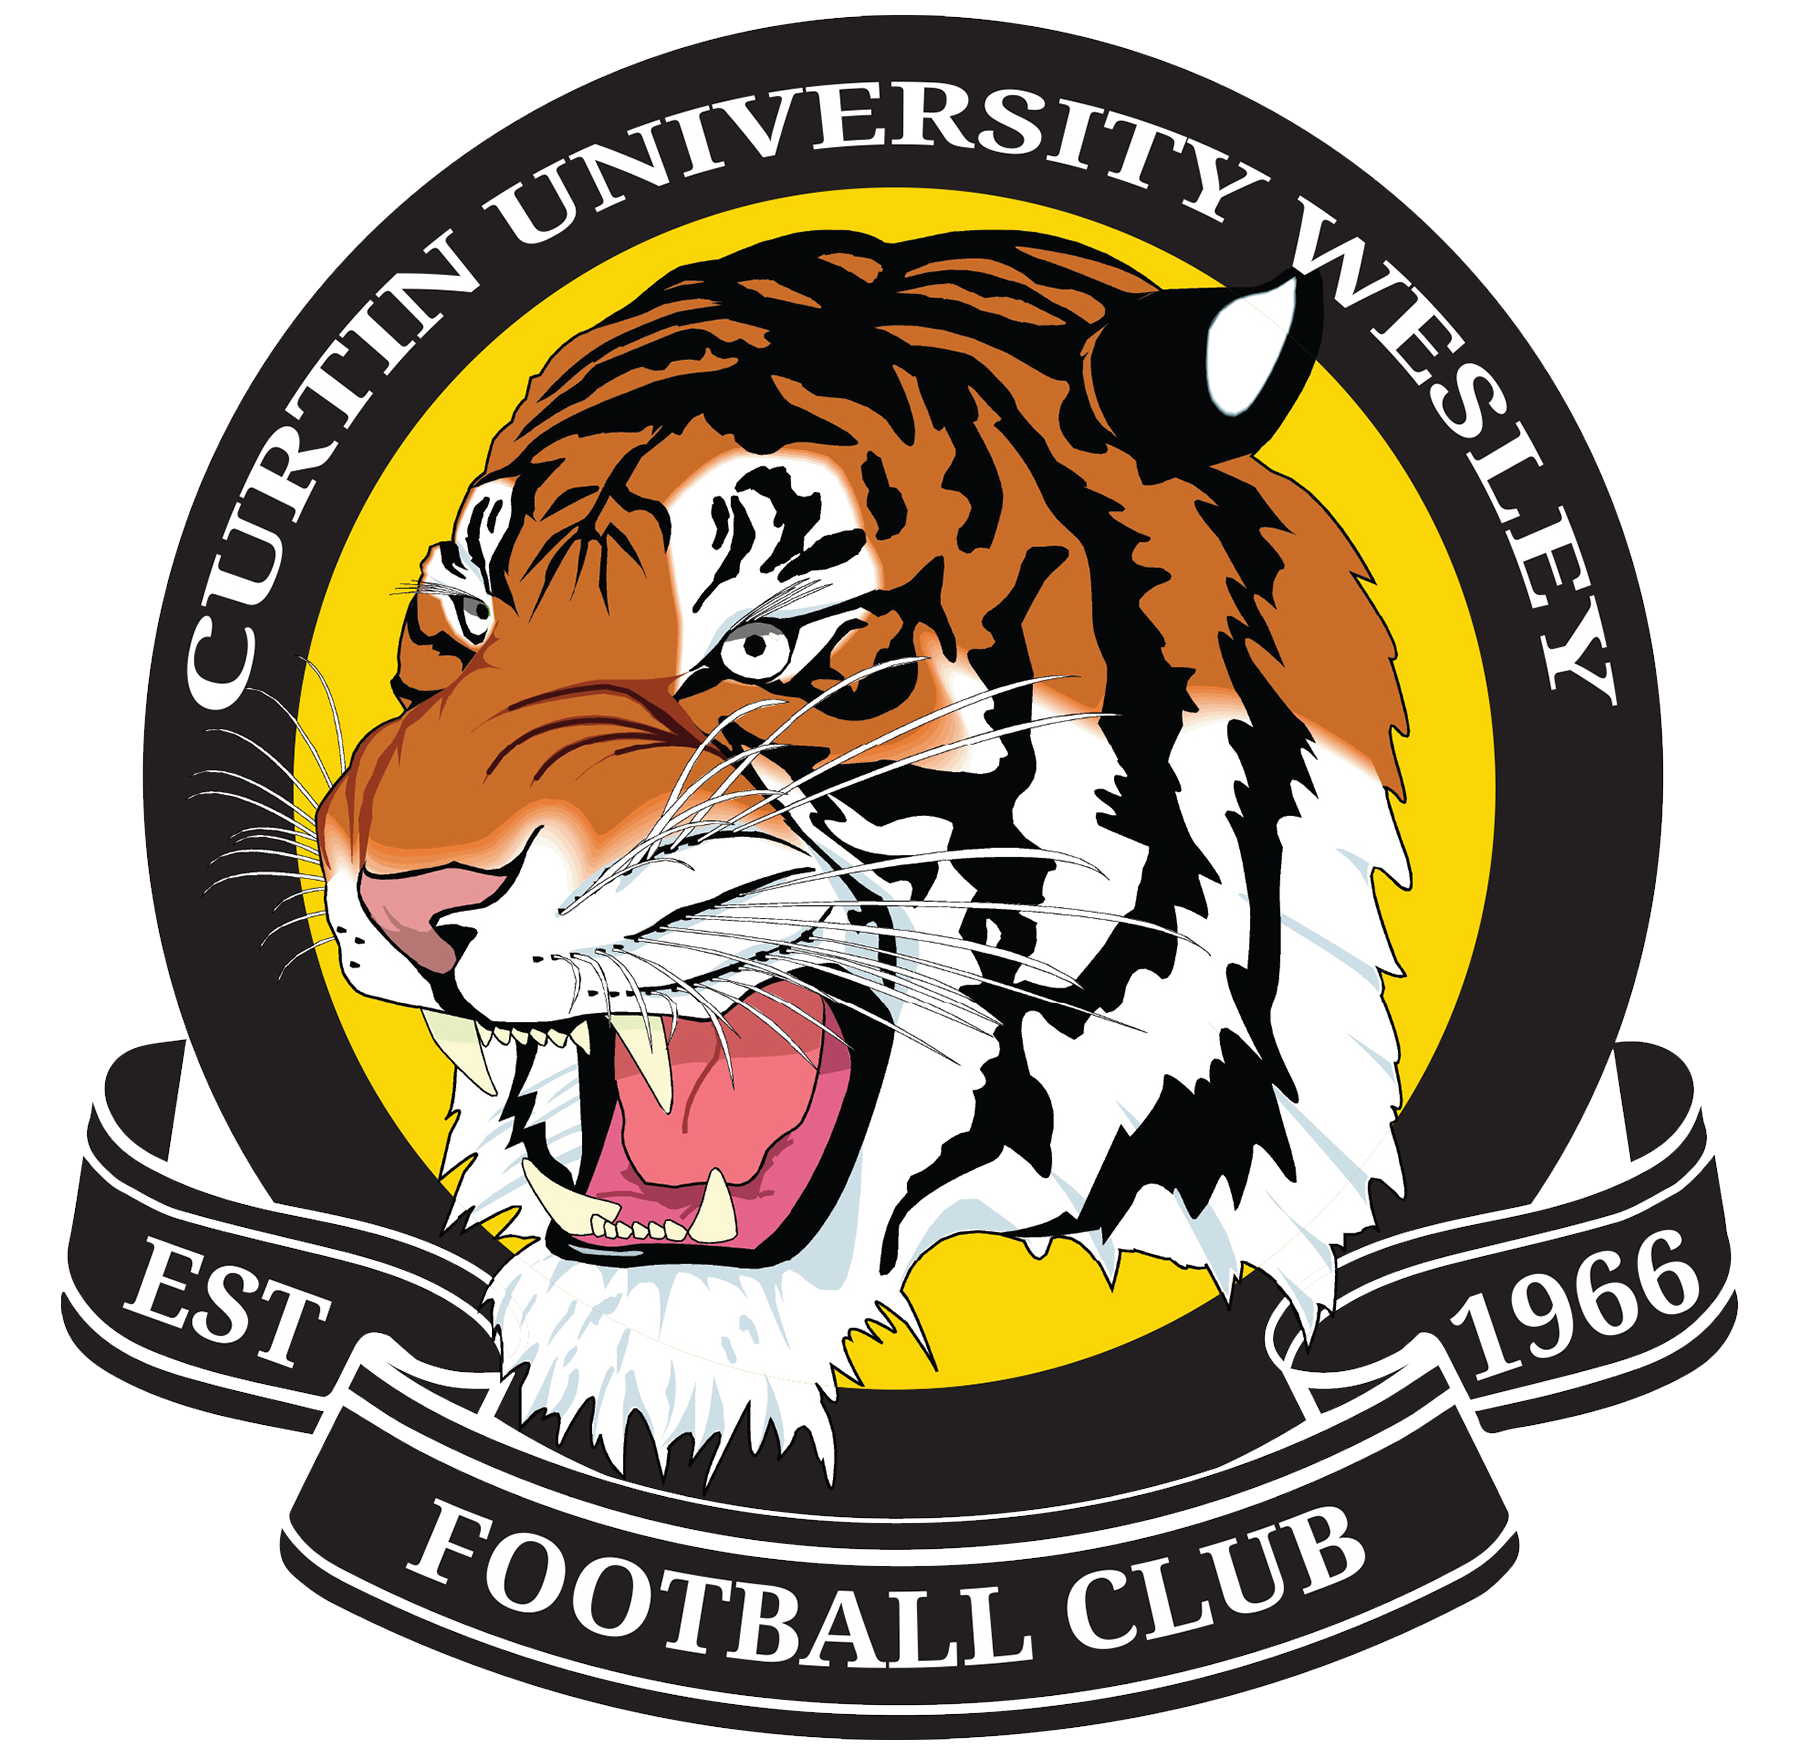 Curtin Uni Wesley Football Club